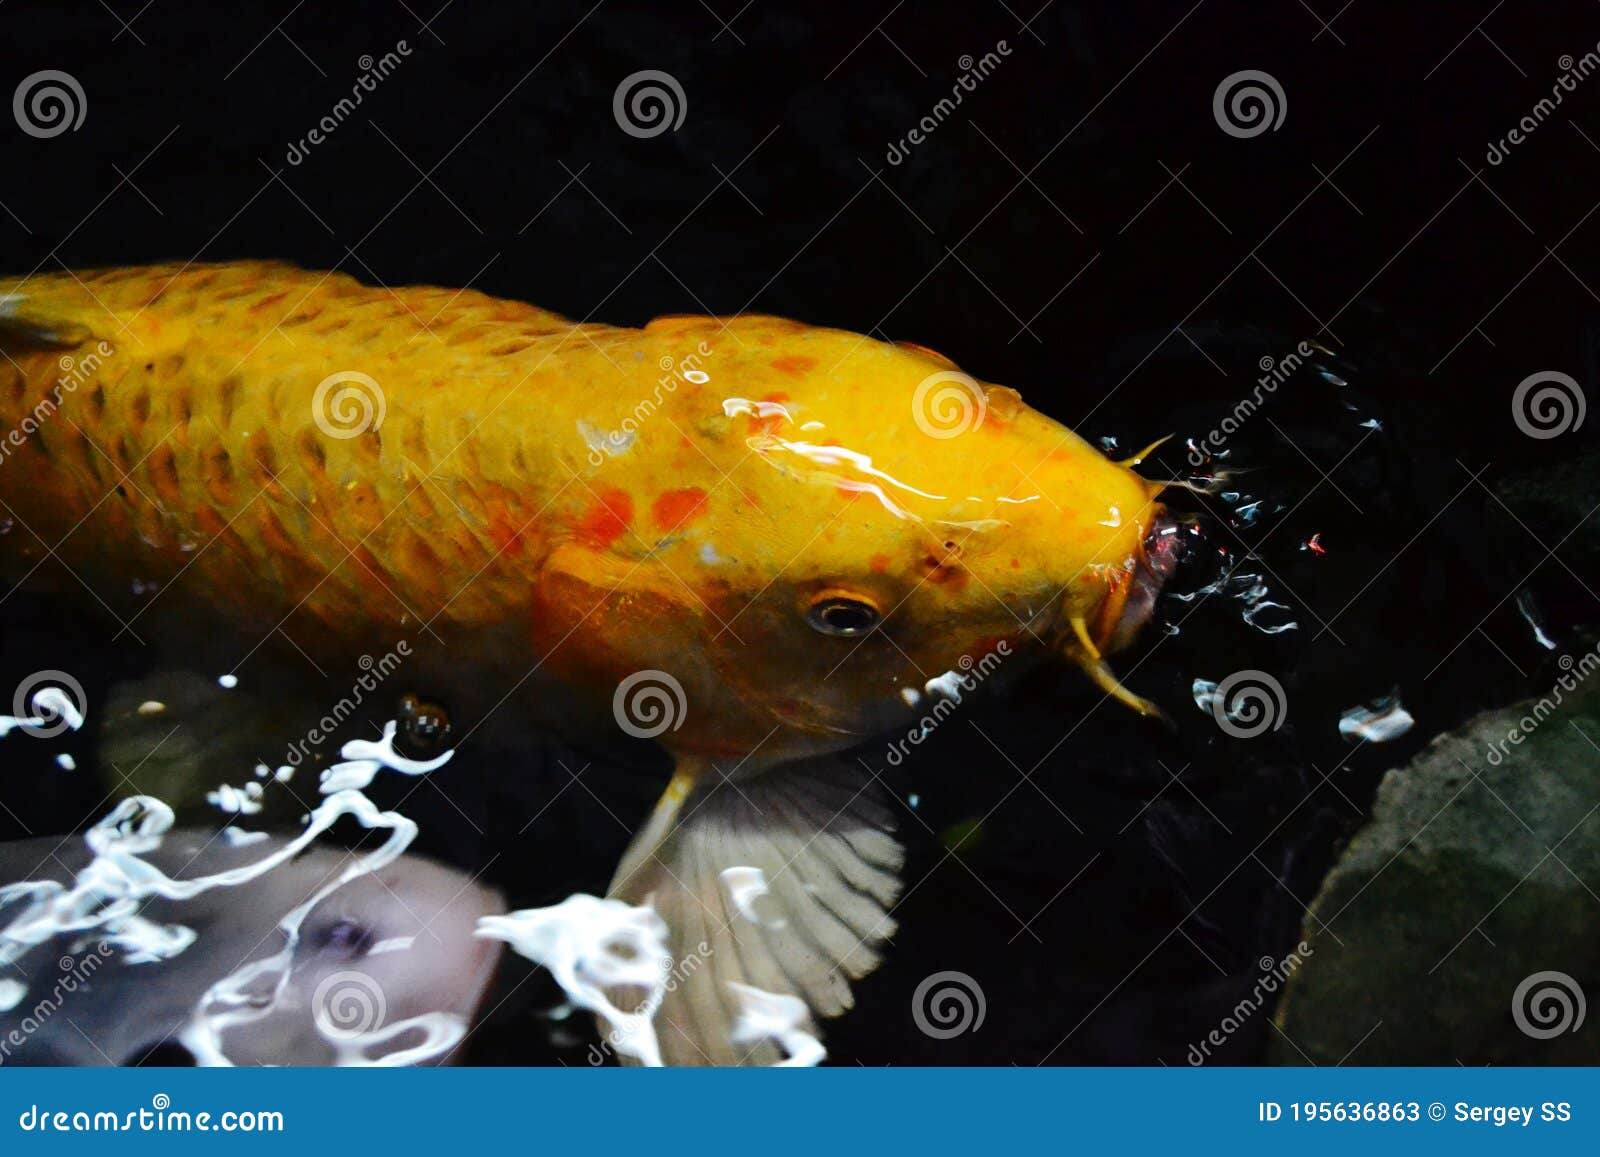 Koi carp pond fish face stock image. Image of carp, invertebrate - 195636863